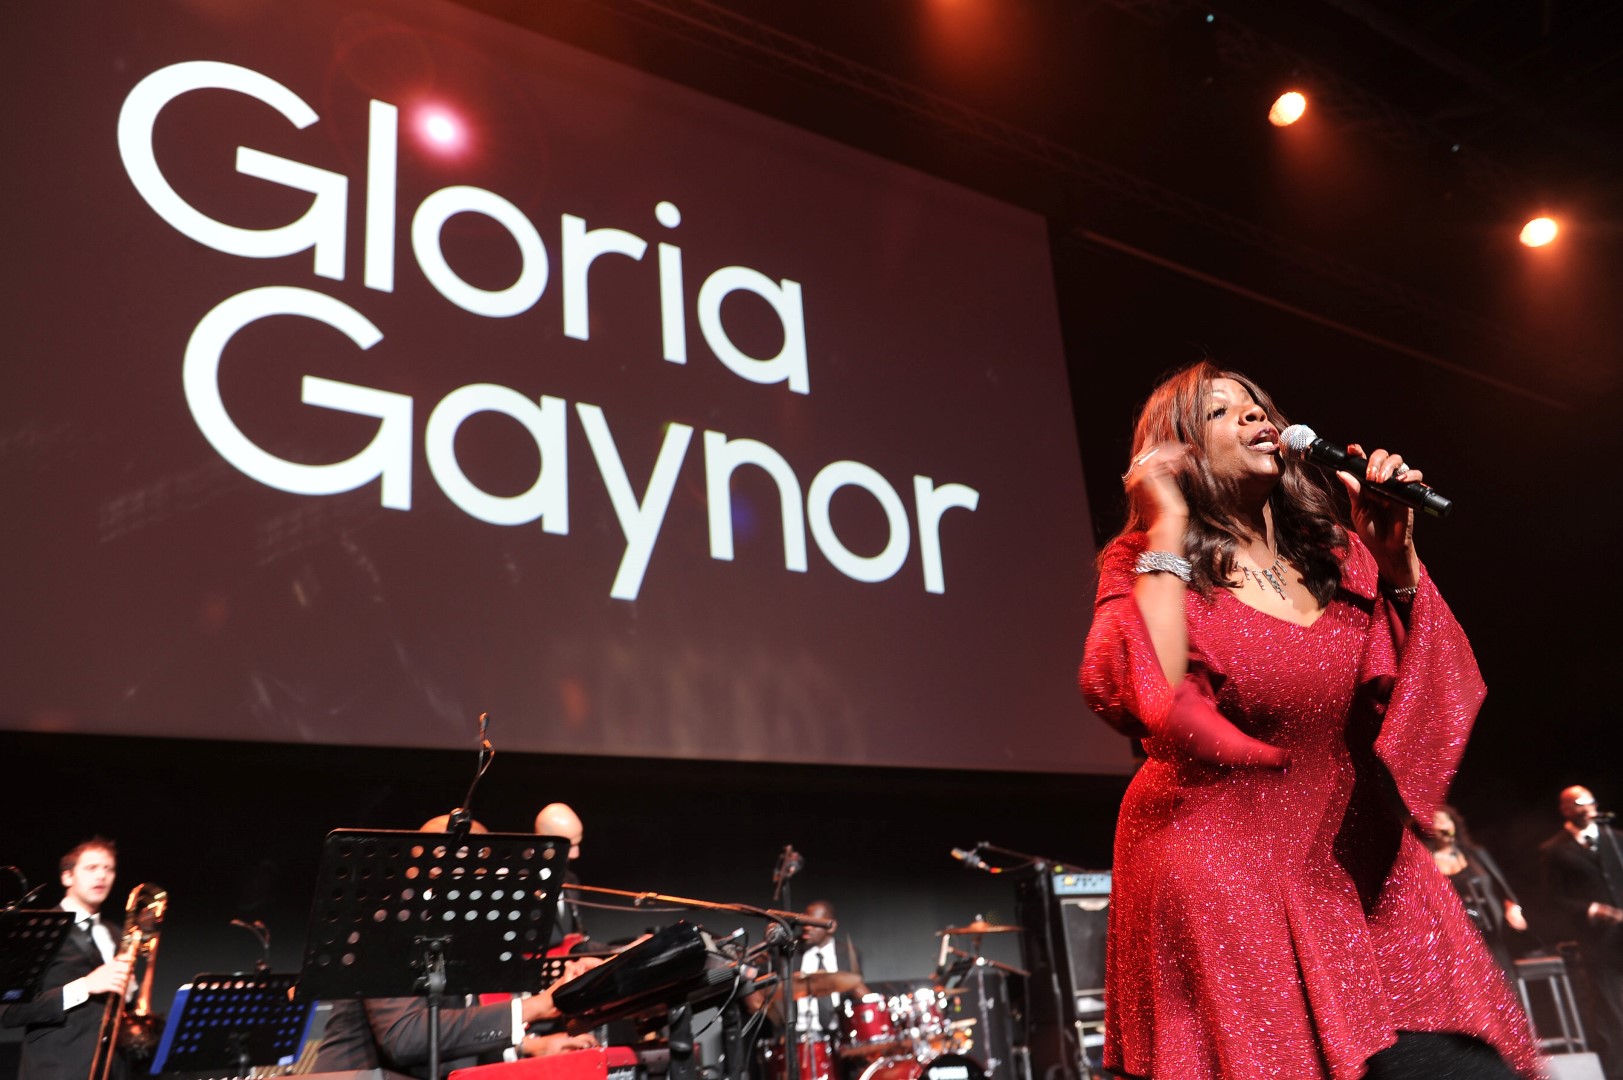 Milano Unica Febbraio 2016: la serata evento con Gloria Gaynor, video e foto